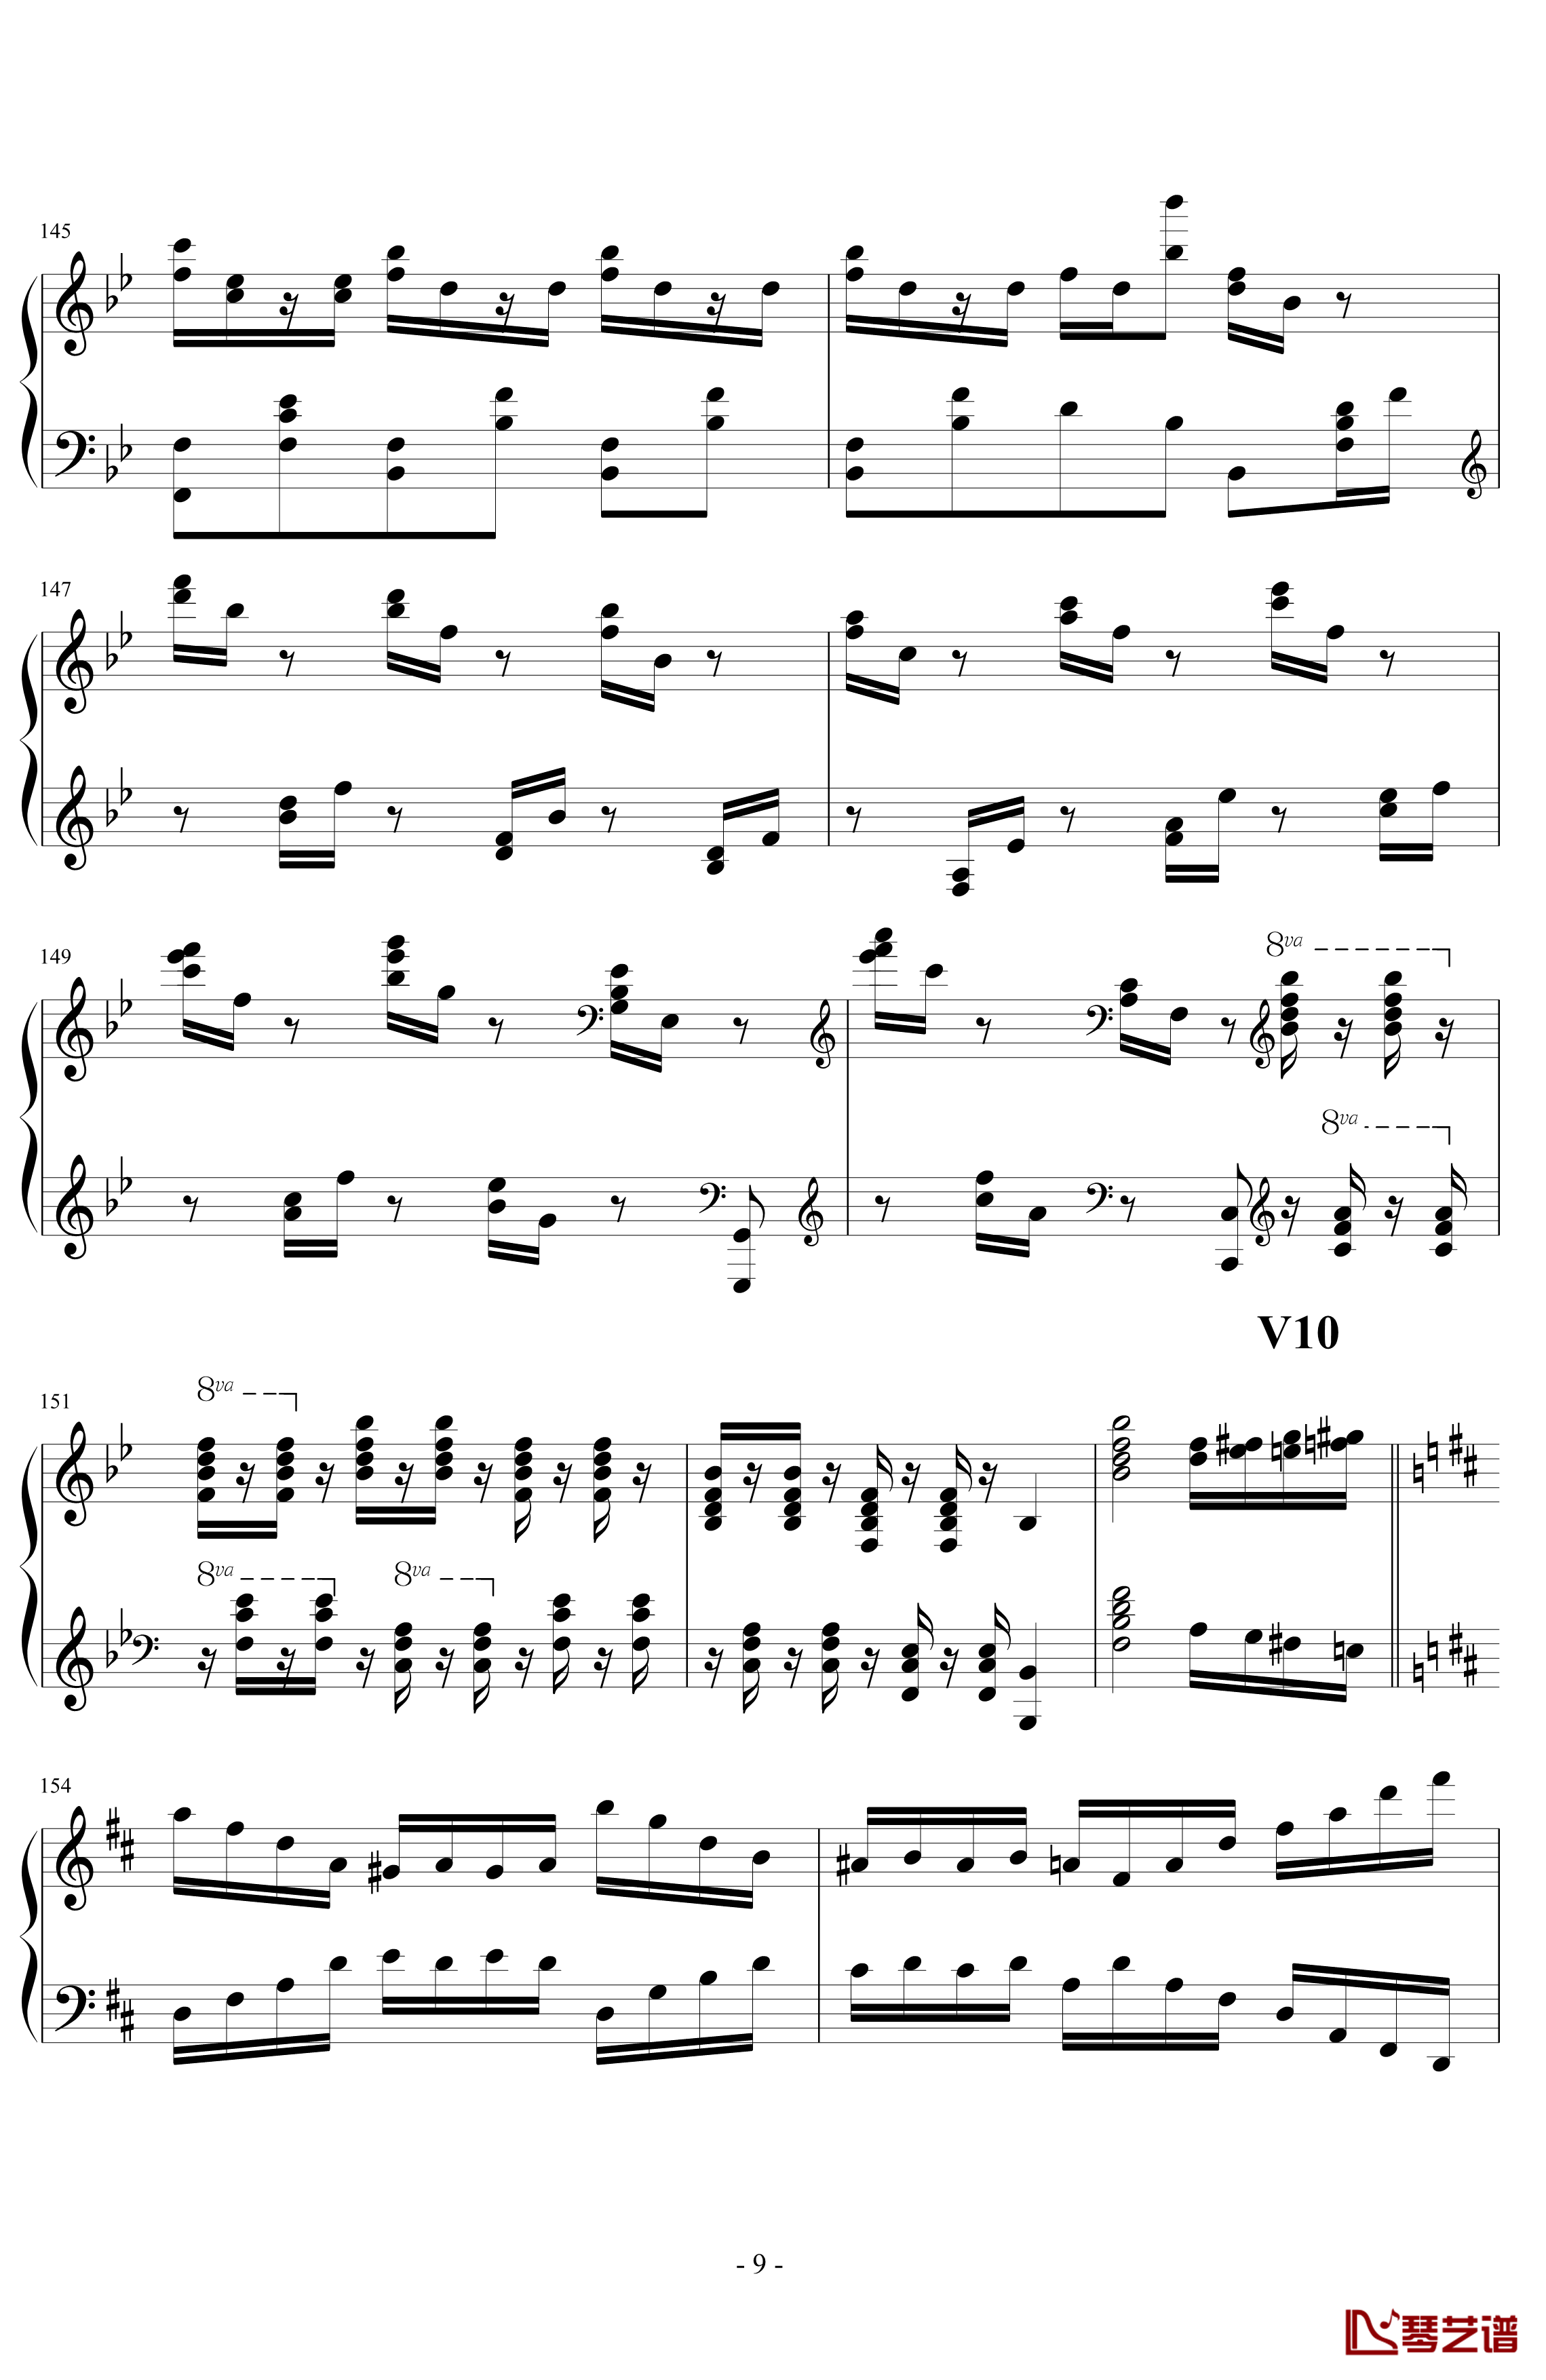 生日歌变奏曲钢琴谱-PARROT1869